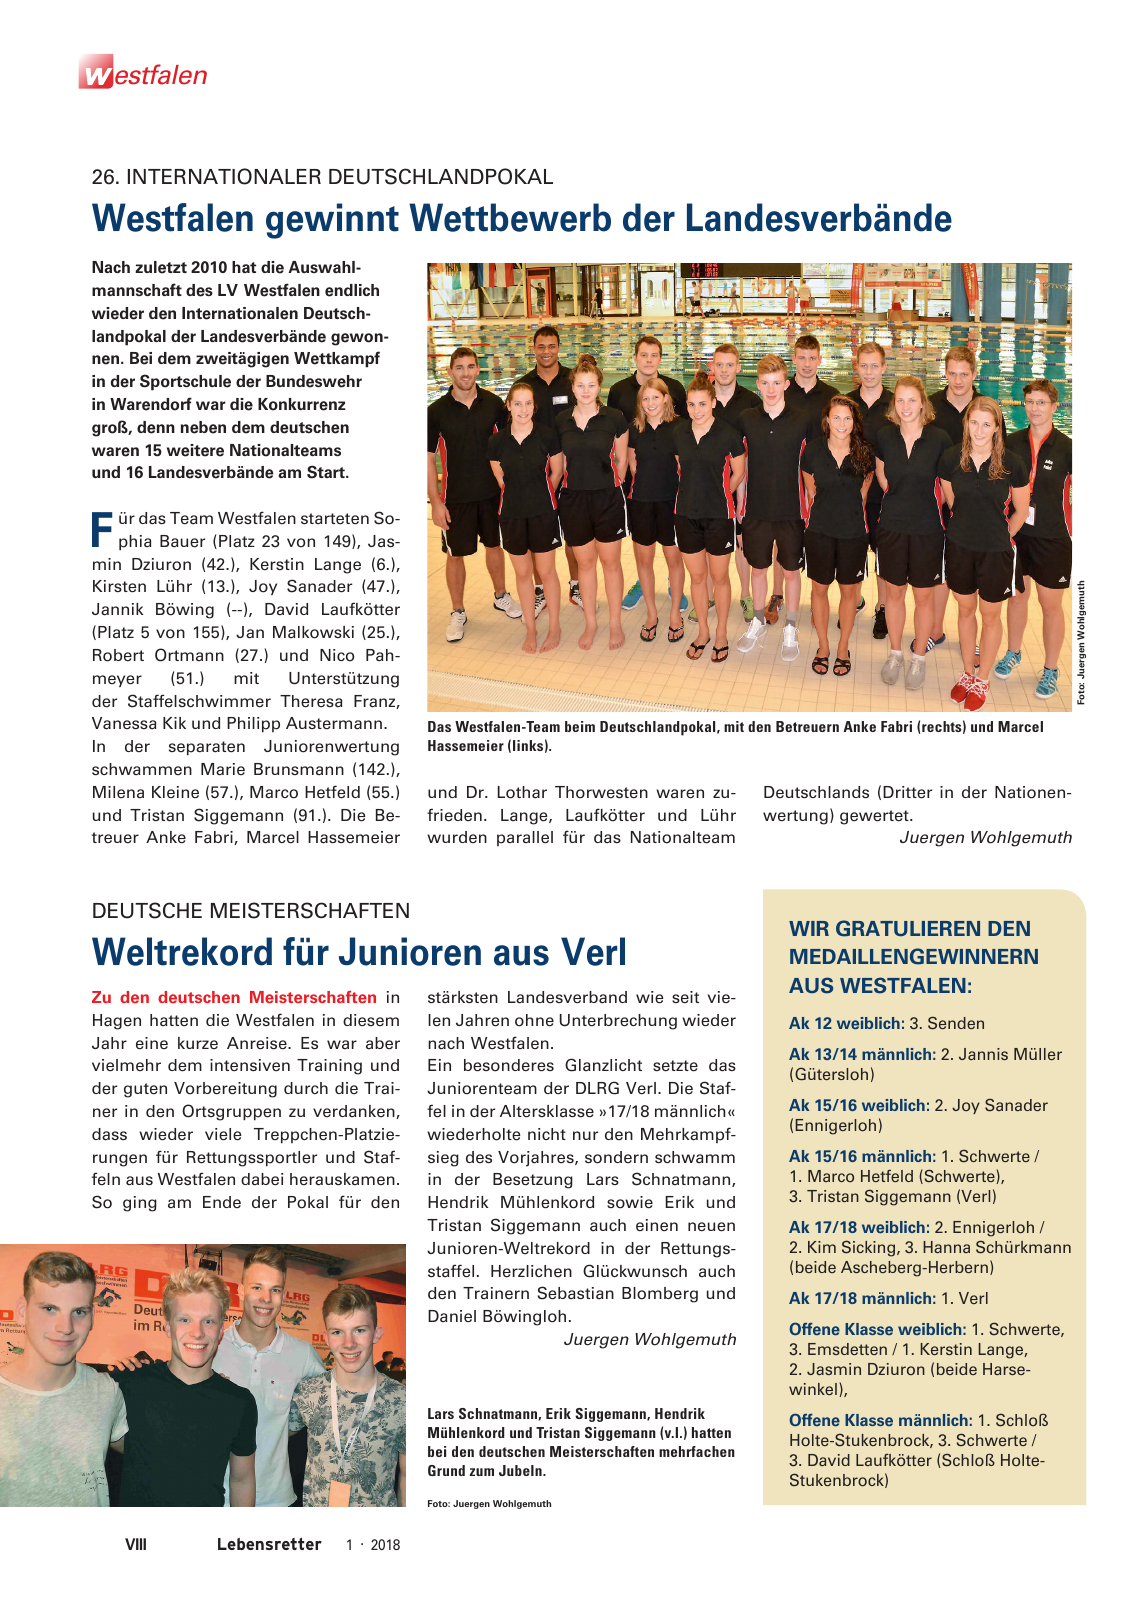 Vorschau Lebensretter 1/2018 - Regionalausgabe Westfalen Seite 10